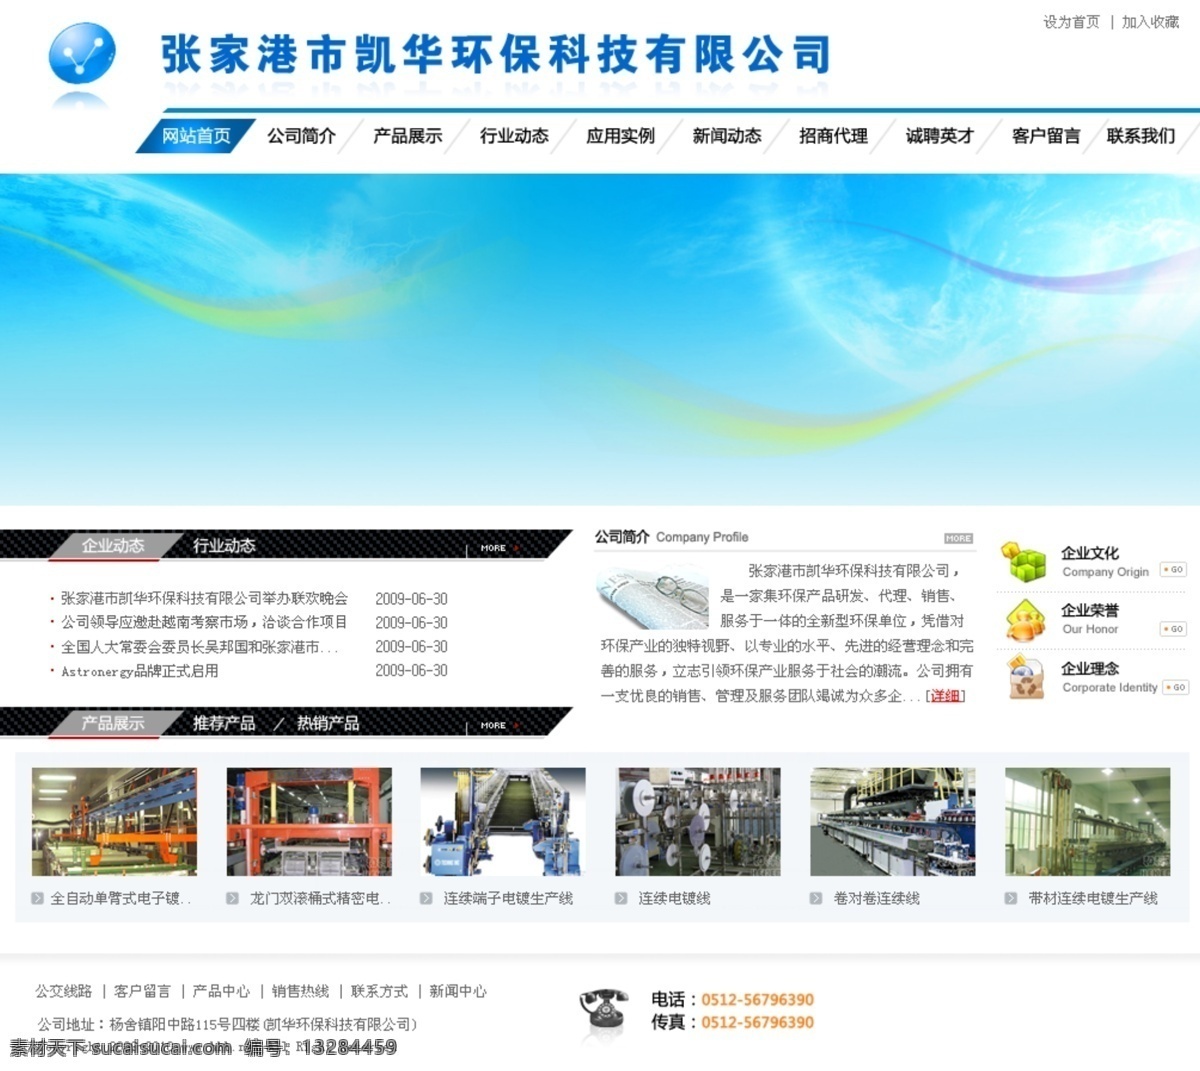 环保机械 公司 网页模板 环保网页设计 机械模版素材 网页素材